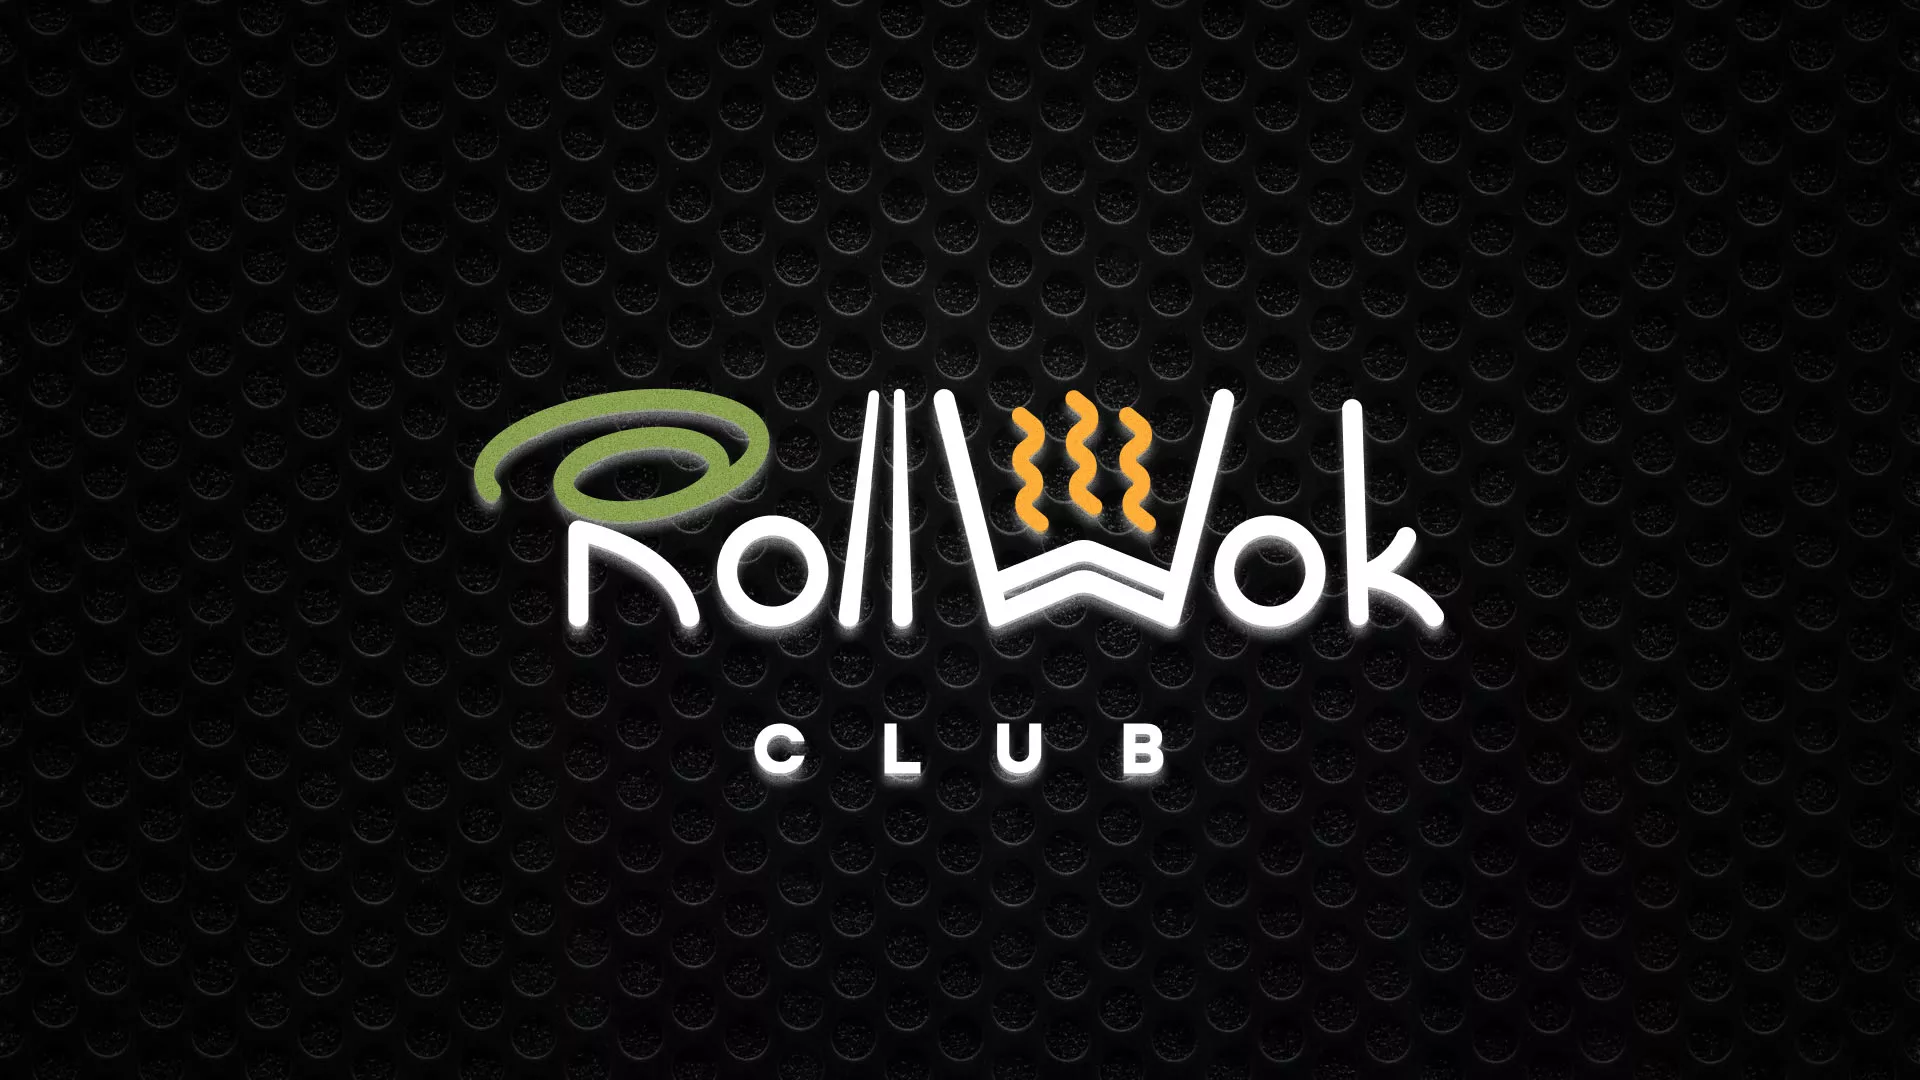 Брендирование торговых точек суши-бара «Roll Wok Club» в Купино